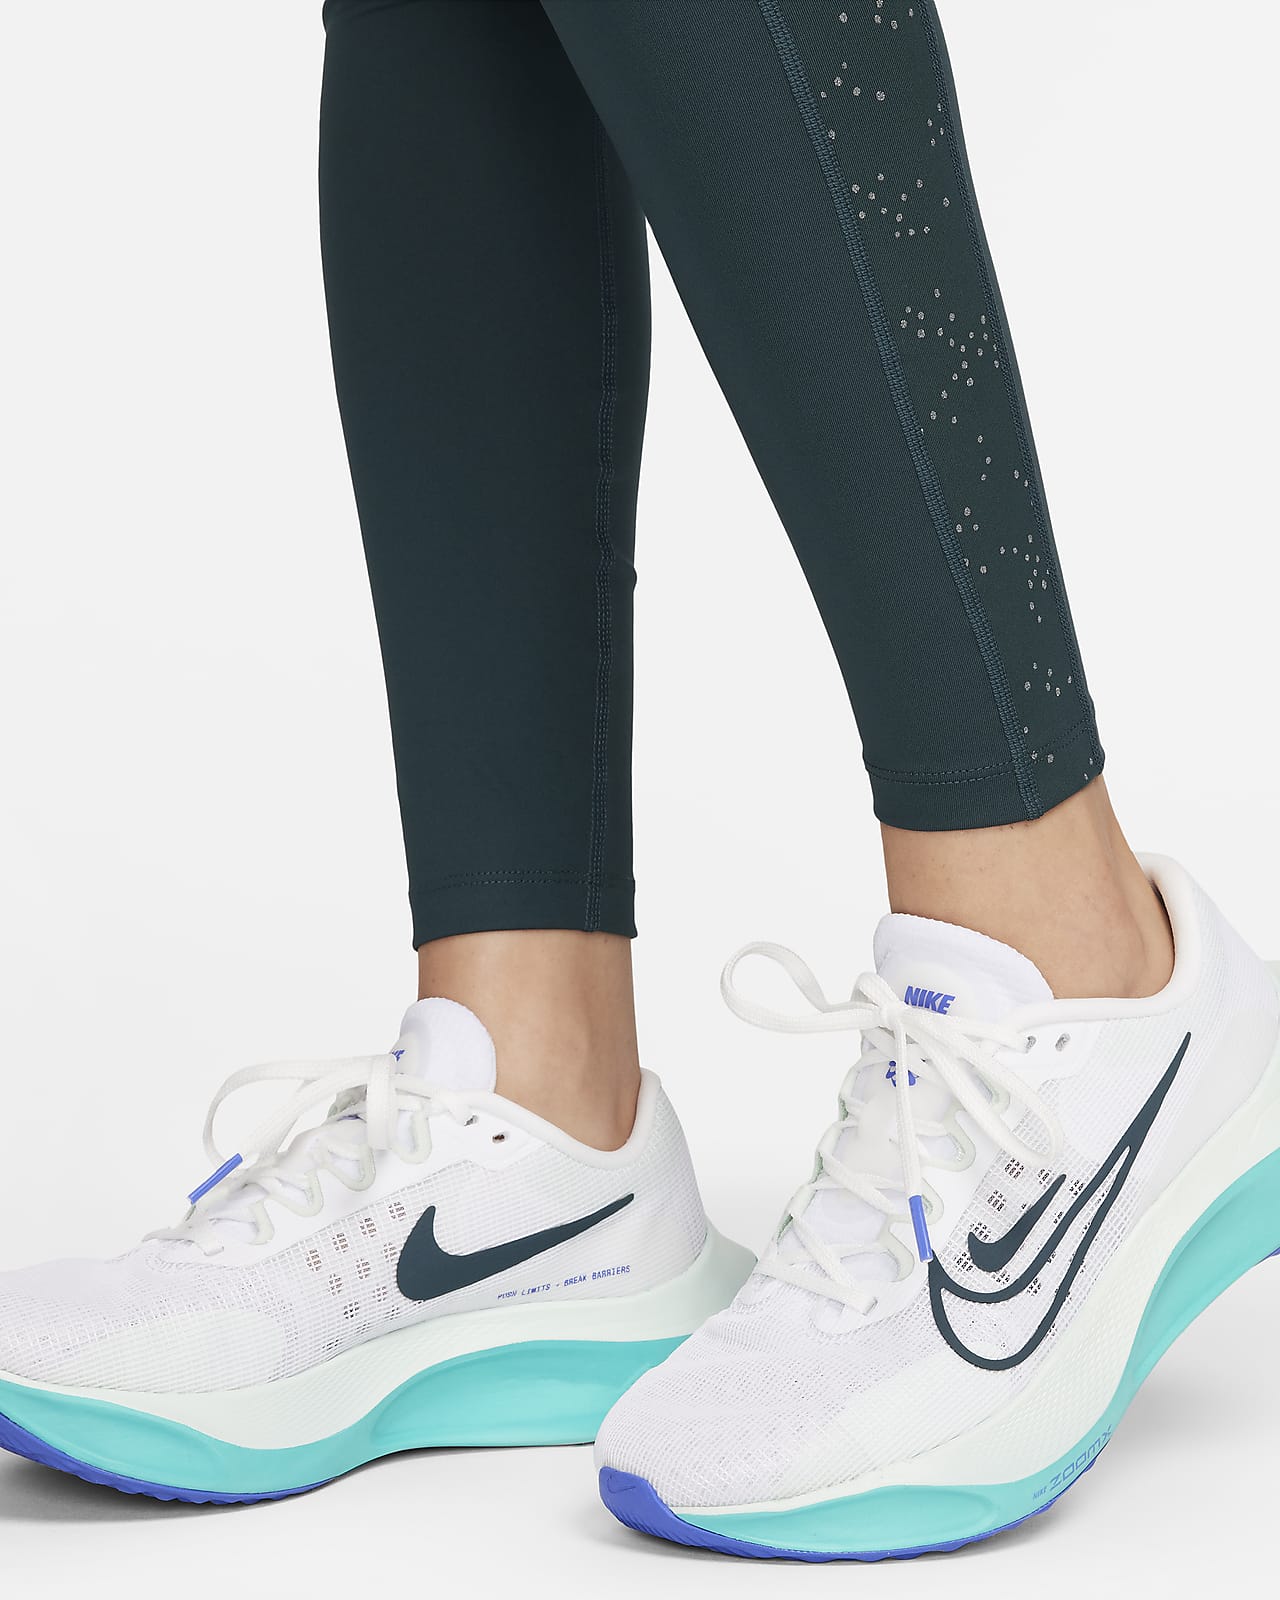 Nike Air Dri-FIT Women's Mid-Rise 7/8 Printed Running Leggings